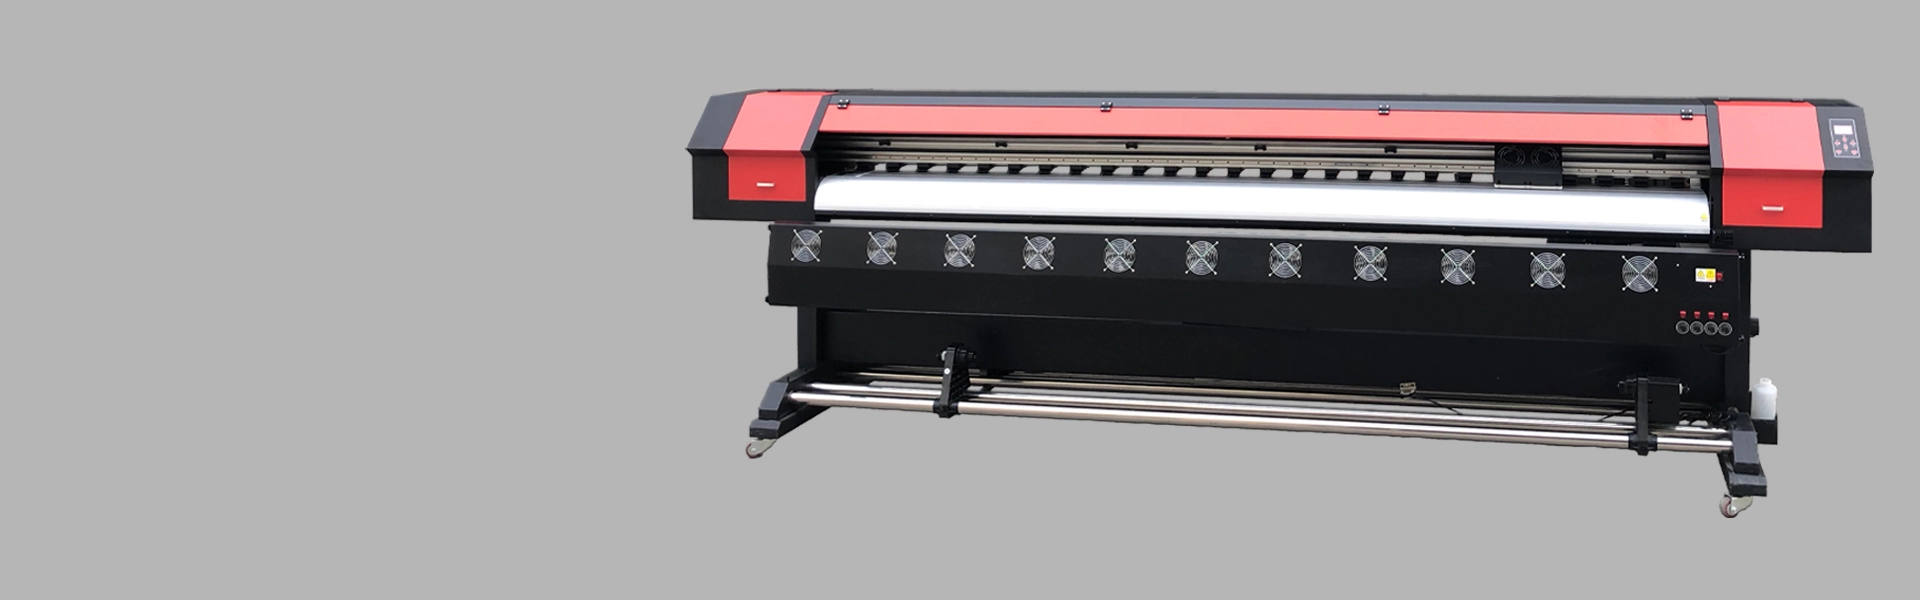 Impresora XP600 de 3,2 m